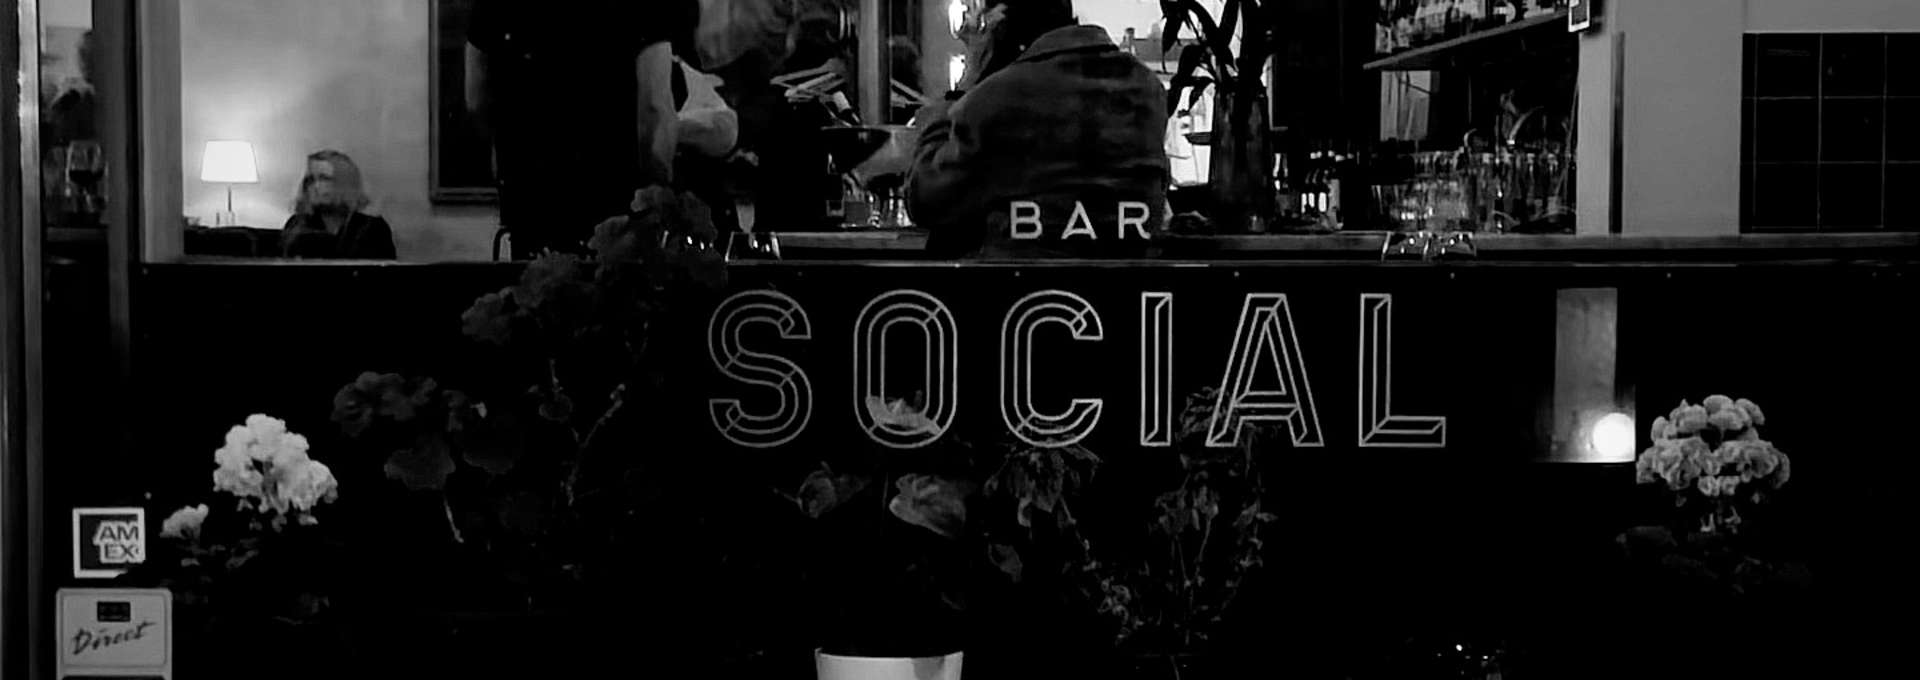 Svartvit bild tagen inne i en bar. Texten Bar social är tryckt på en spegel.